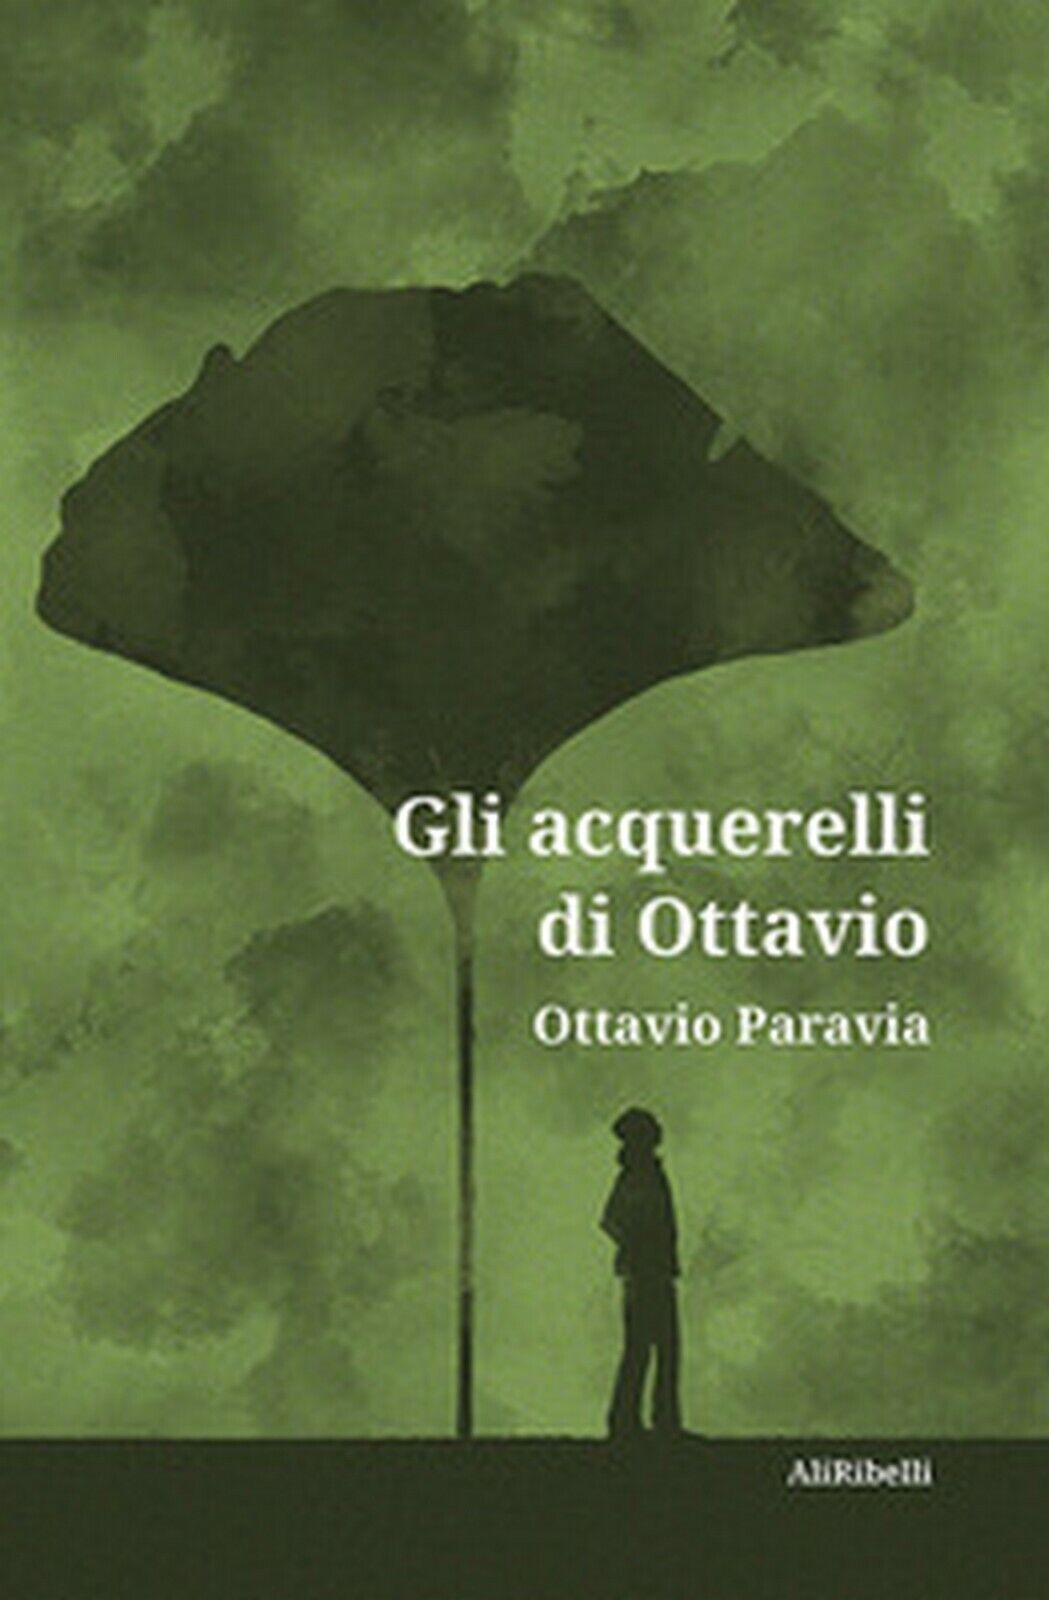 Gli acquerelli di Ottavio  di Ottavio Paravia,  2020,  Ali Ribelli Edizioni